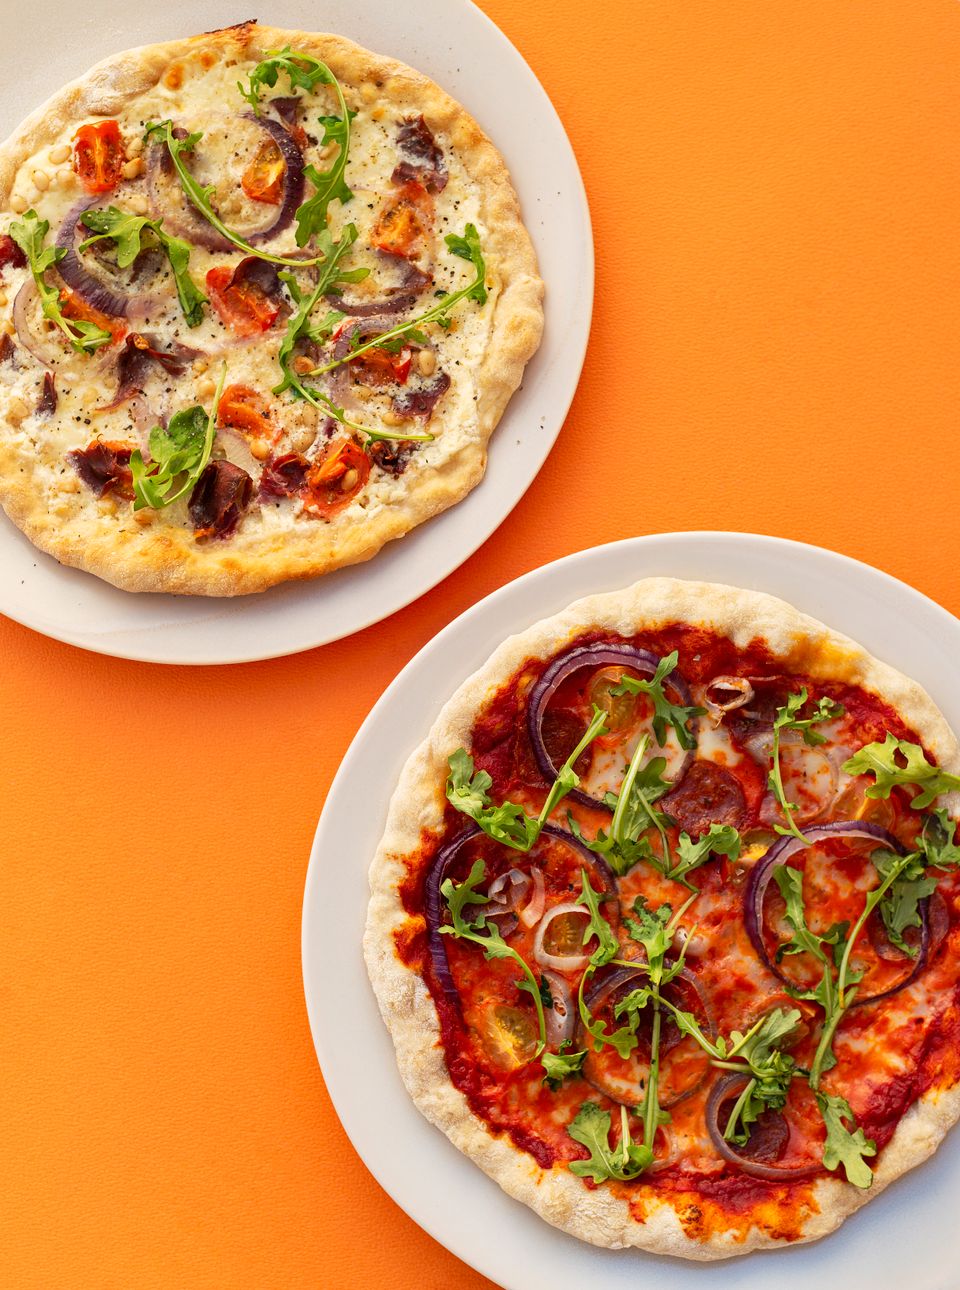 To hvite fat med hver sin pizza oppå, én med hvit saus og én med rød saus, ligger på en knalloransje bakgrunn.